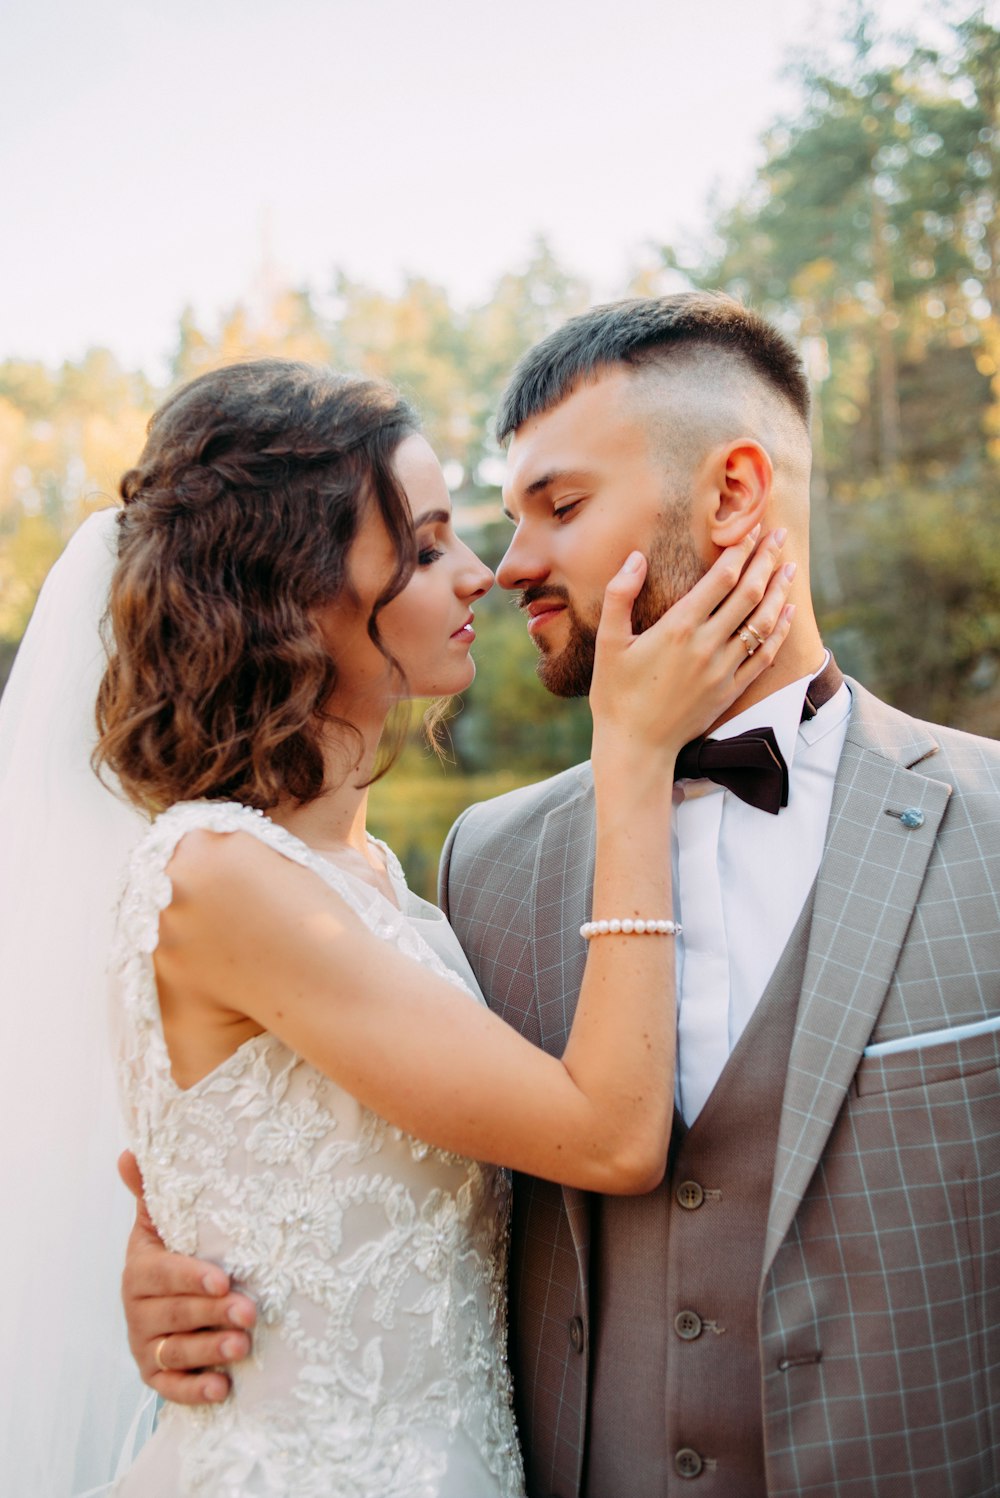 Frau im Brautkleid hält das rechte Kinn eines Mannes, beide sind im Begriff, sich zu küssen